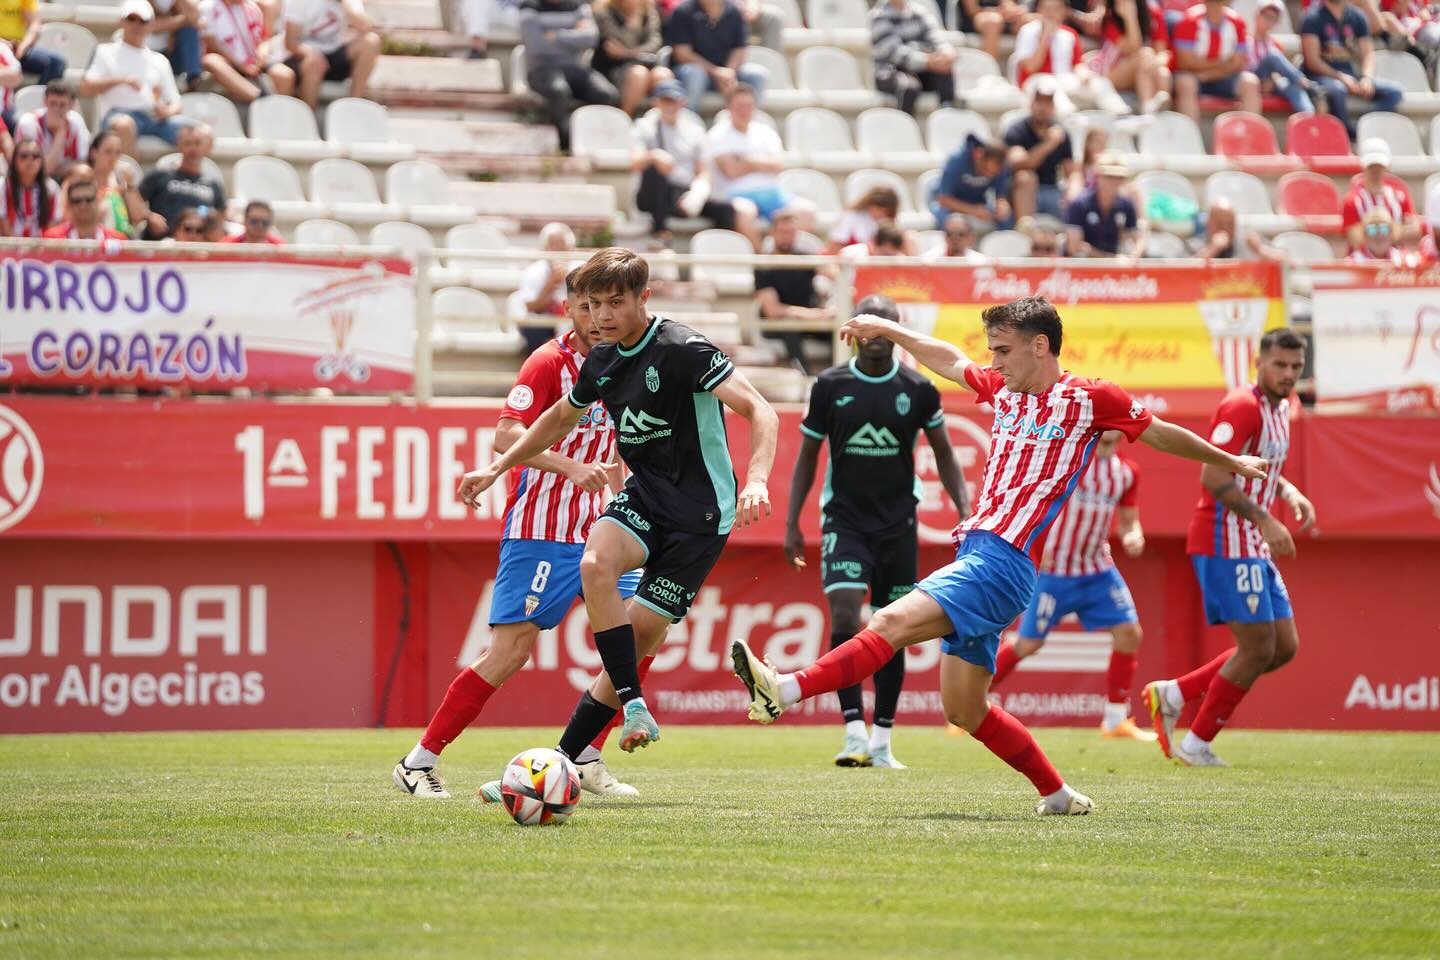 El Algeciras Club de Fútbol derrota por la mínima al Atlético Baleares y logra la permanencia